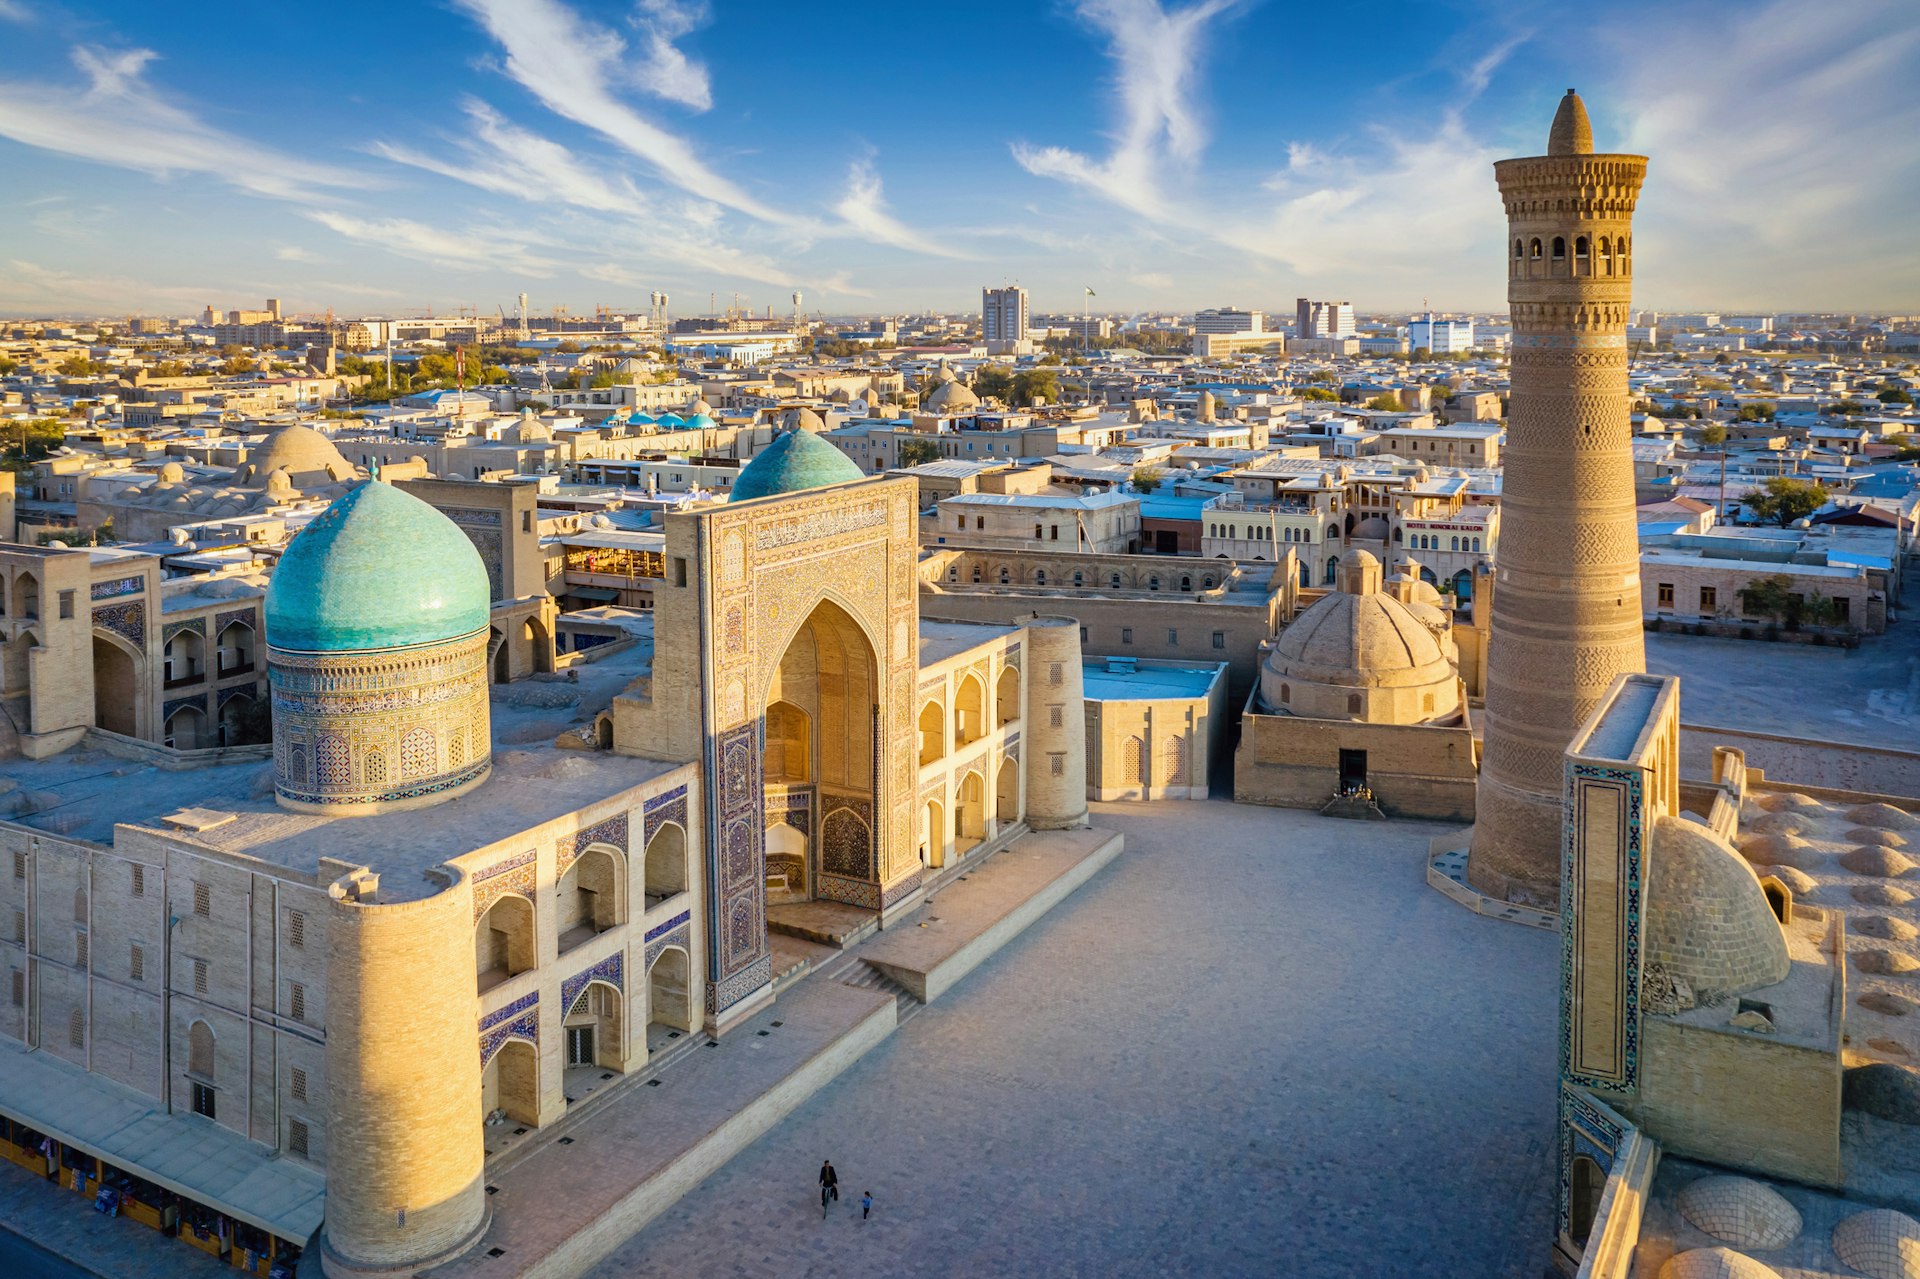 Комплекс зданий мечети с двумя куполами, покрытыми голубой черепицей, и высоким минаретом.